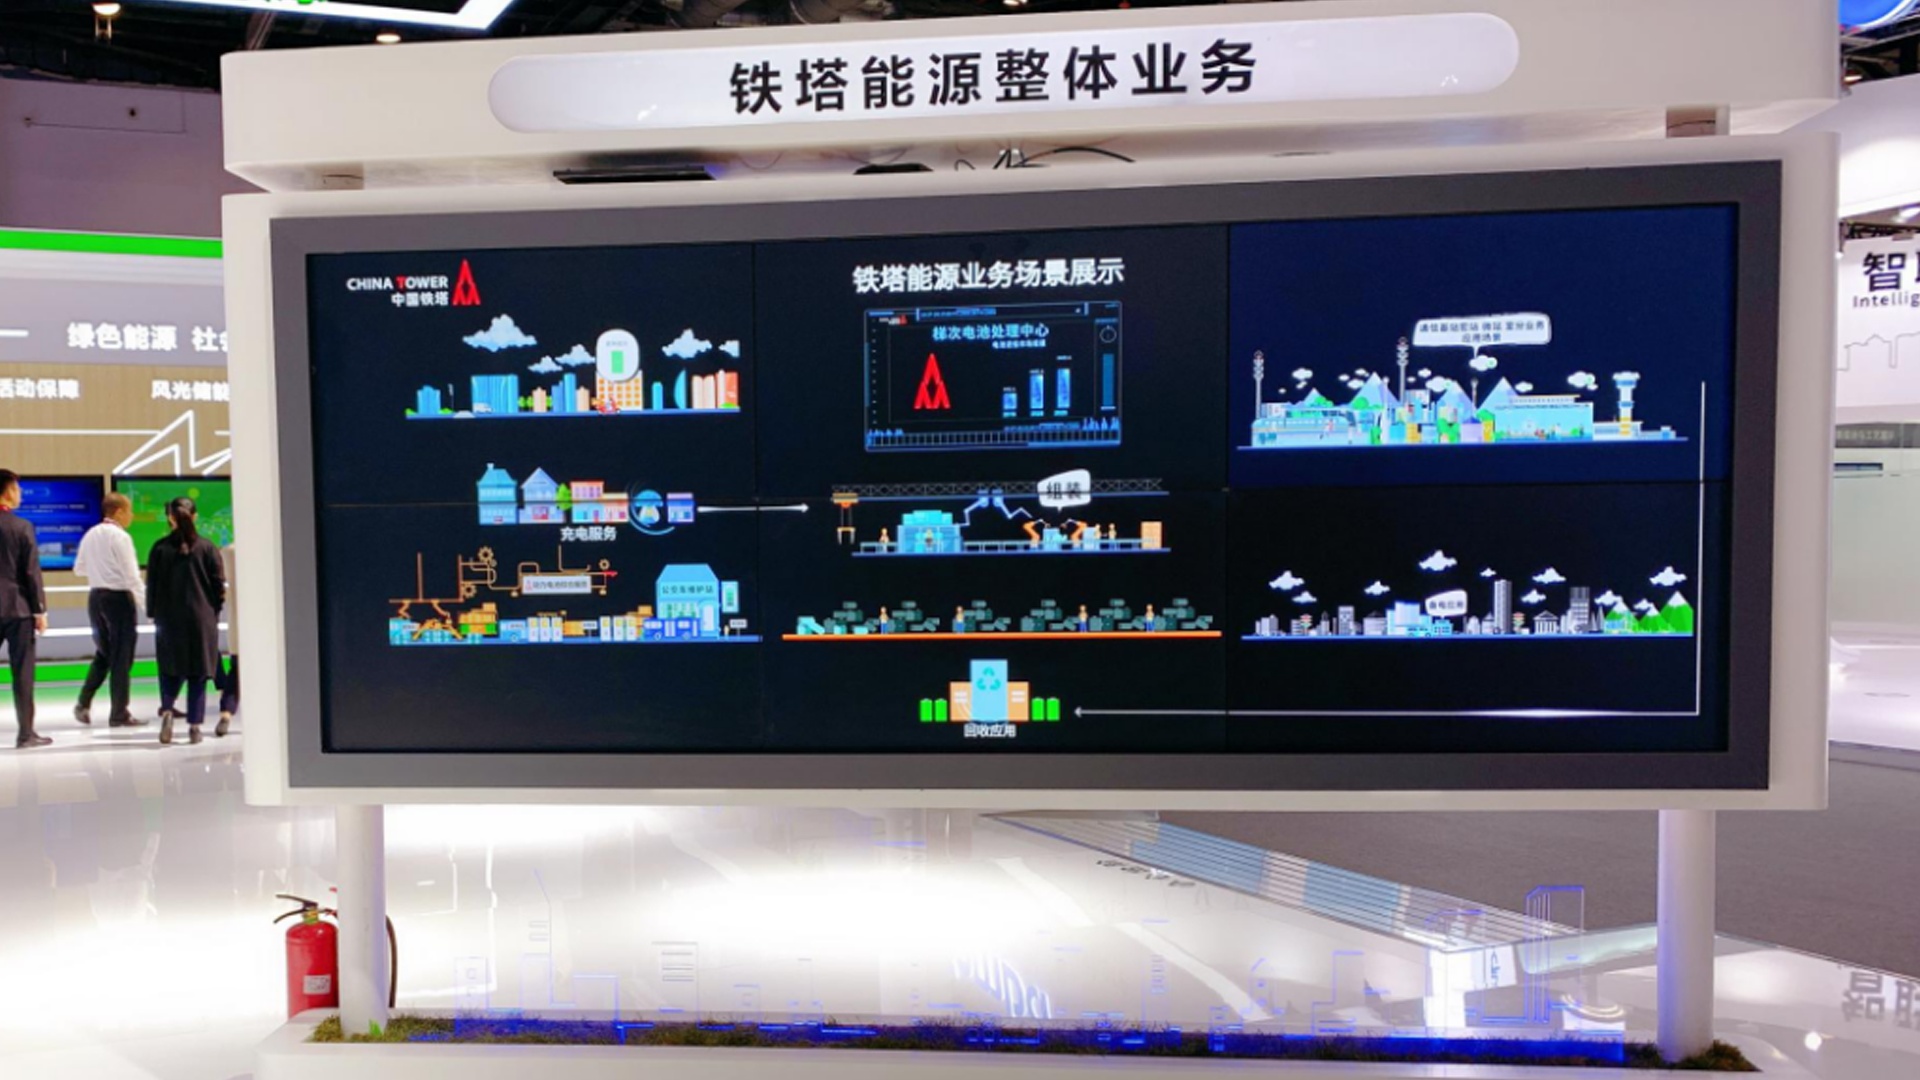 中国国际信息通信展览会中国铁塔能源业务展示